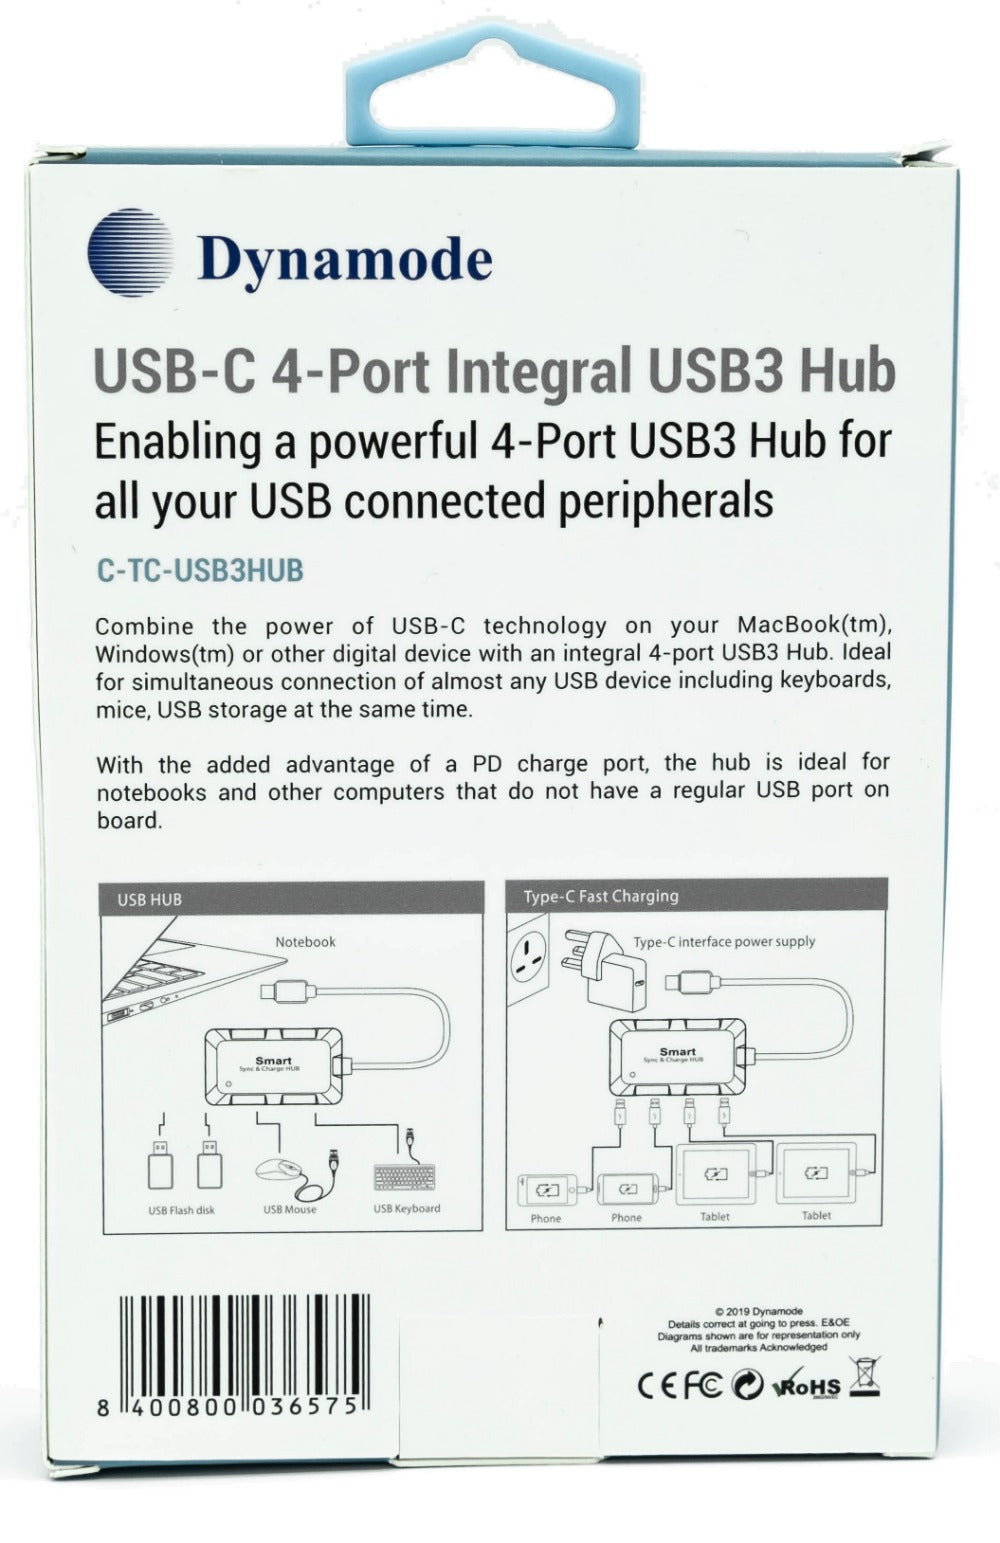 Plug-and-play USB3 hub solution